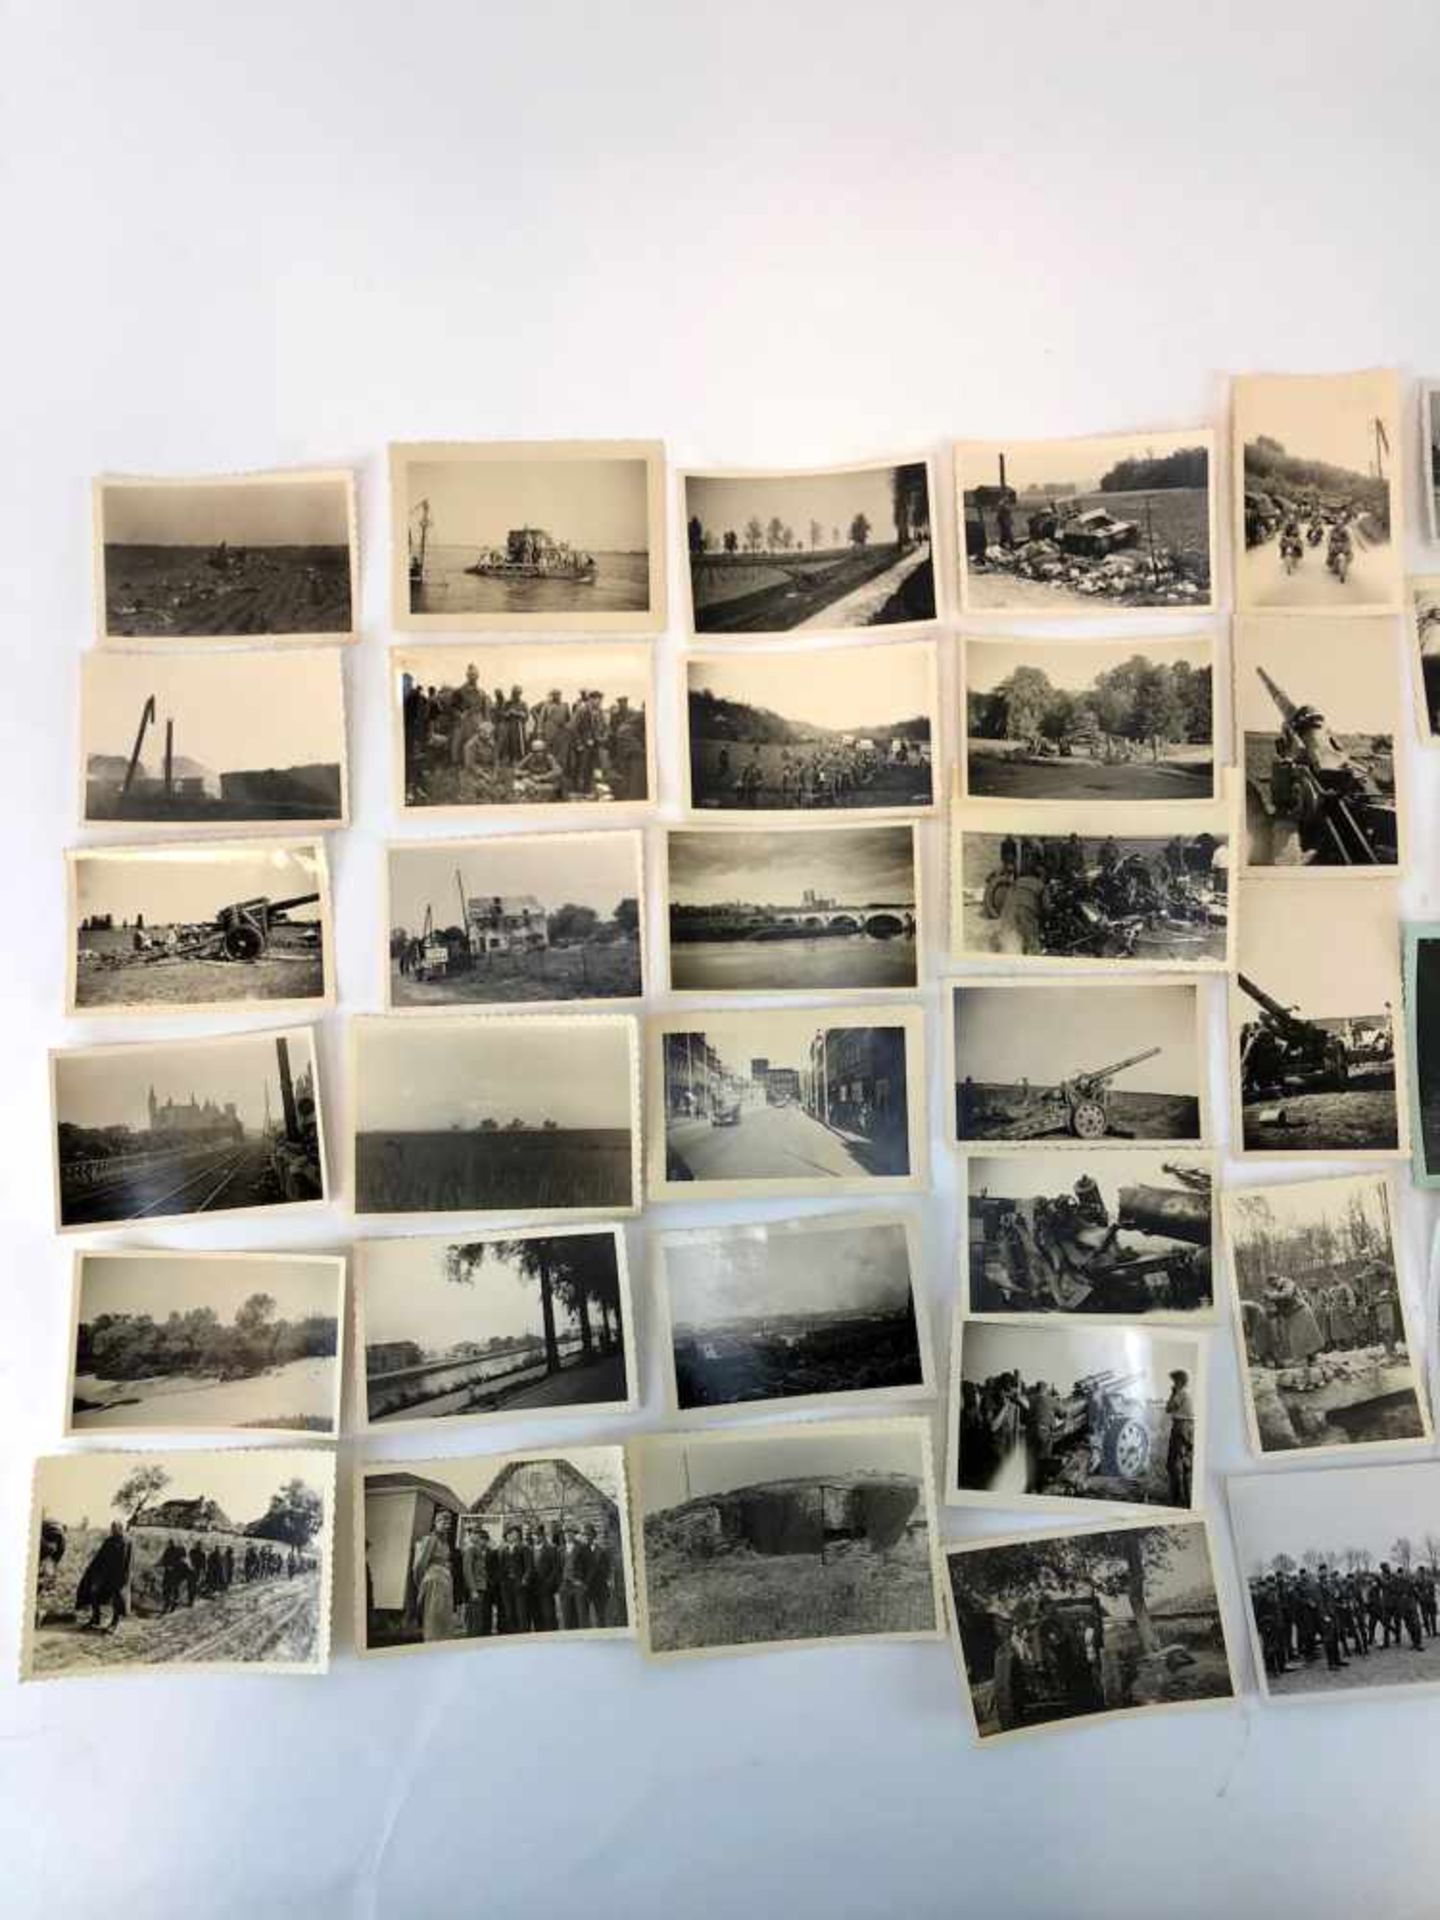 Dt. Feldwebel (Stalingradkämpfer) der Wehrmacht: 400 Fotografien, 1941/42. Frankreich, Belgien, - Bild 4 aus 13